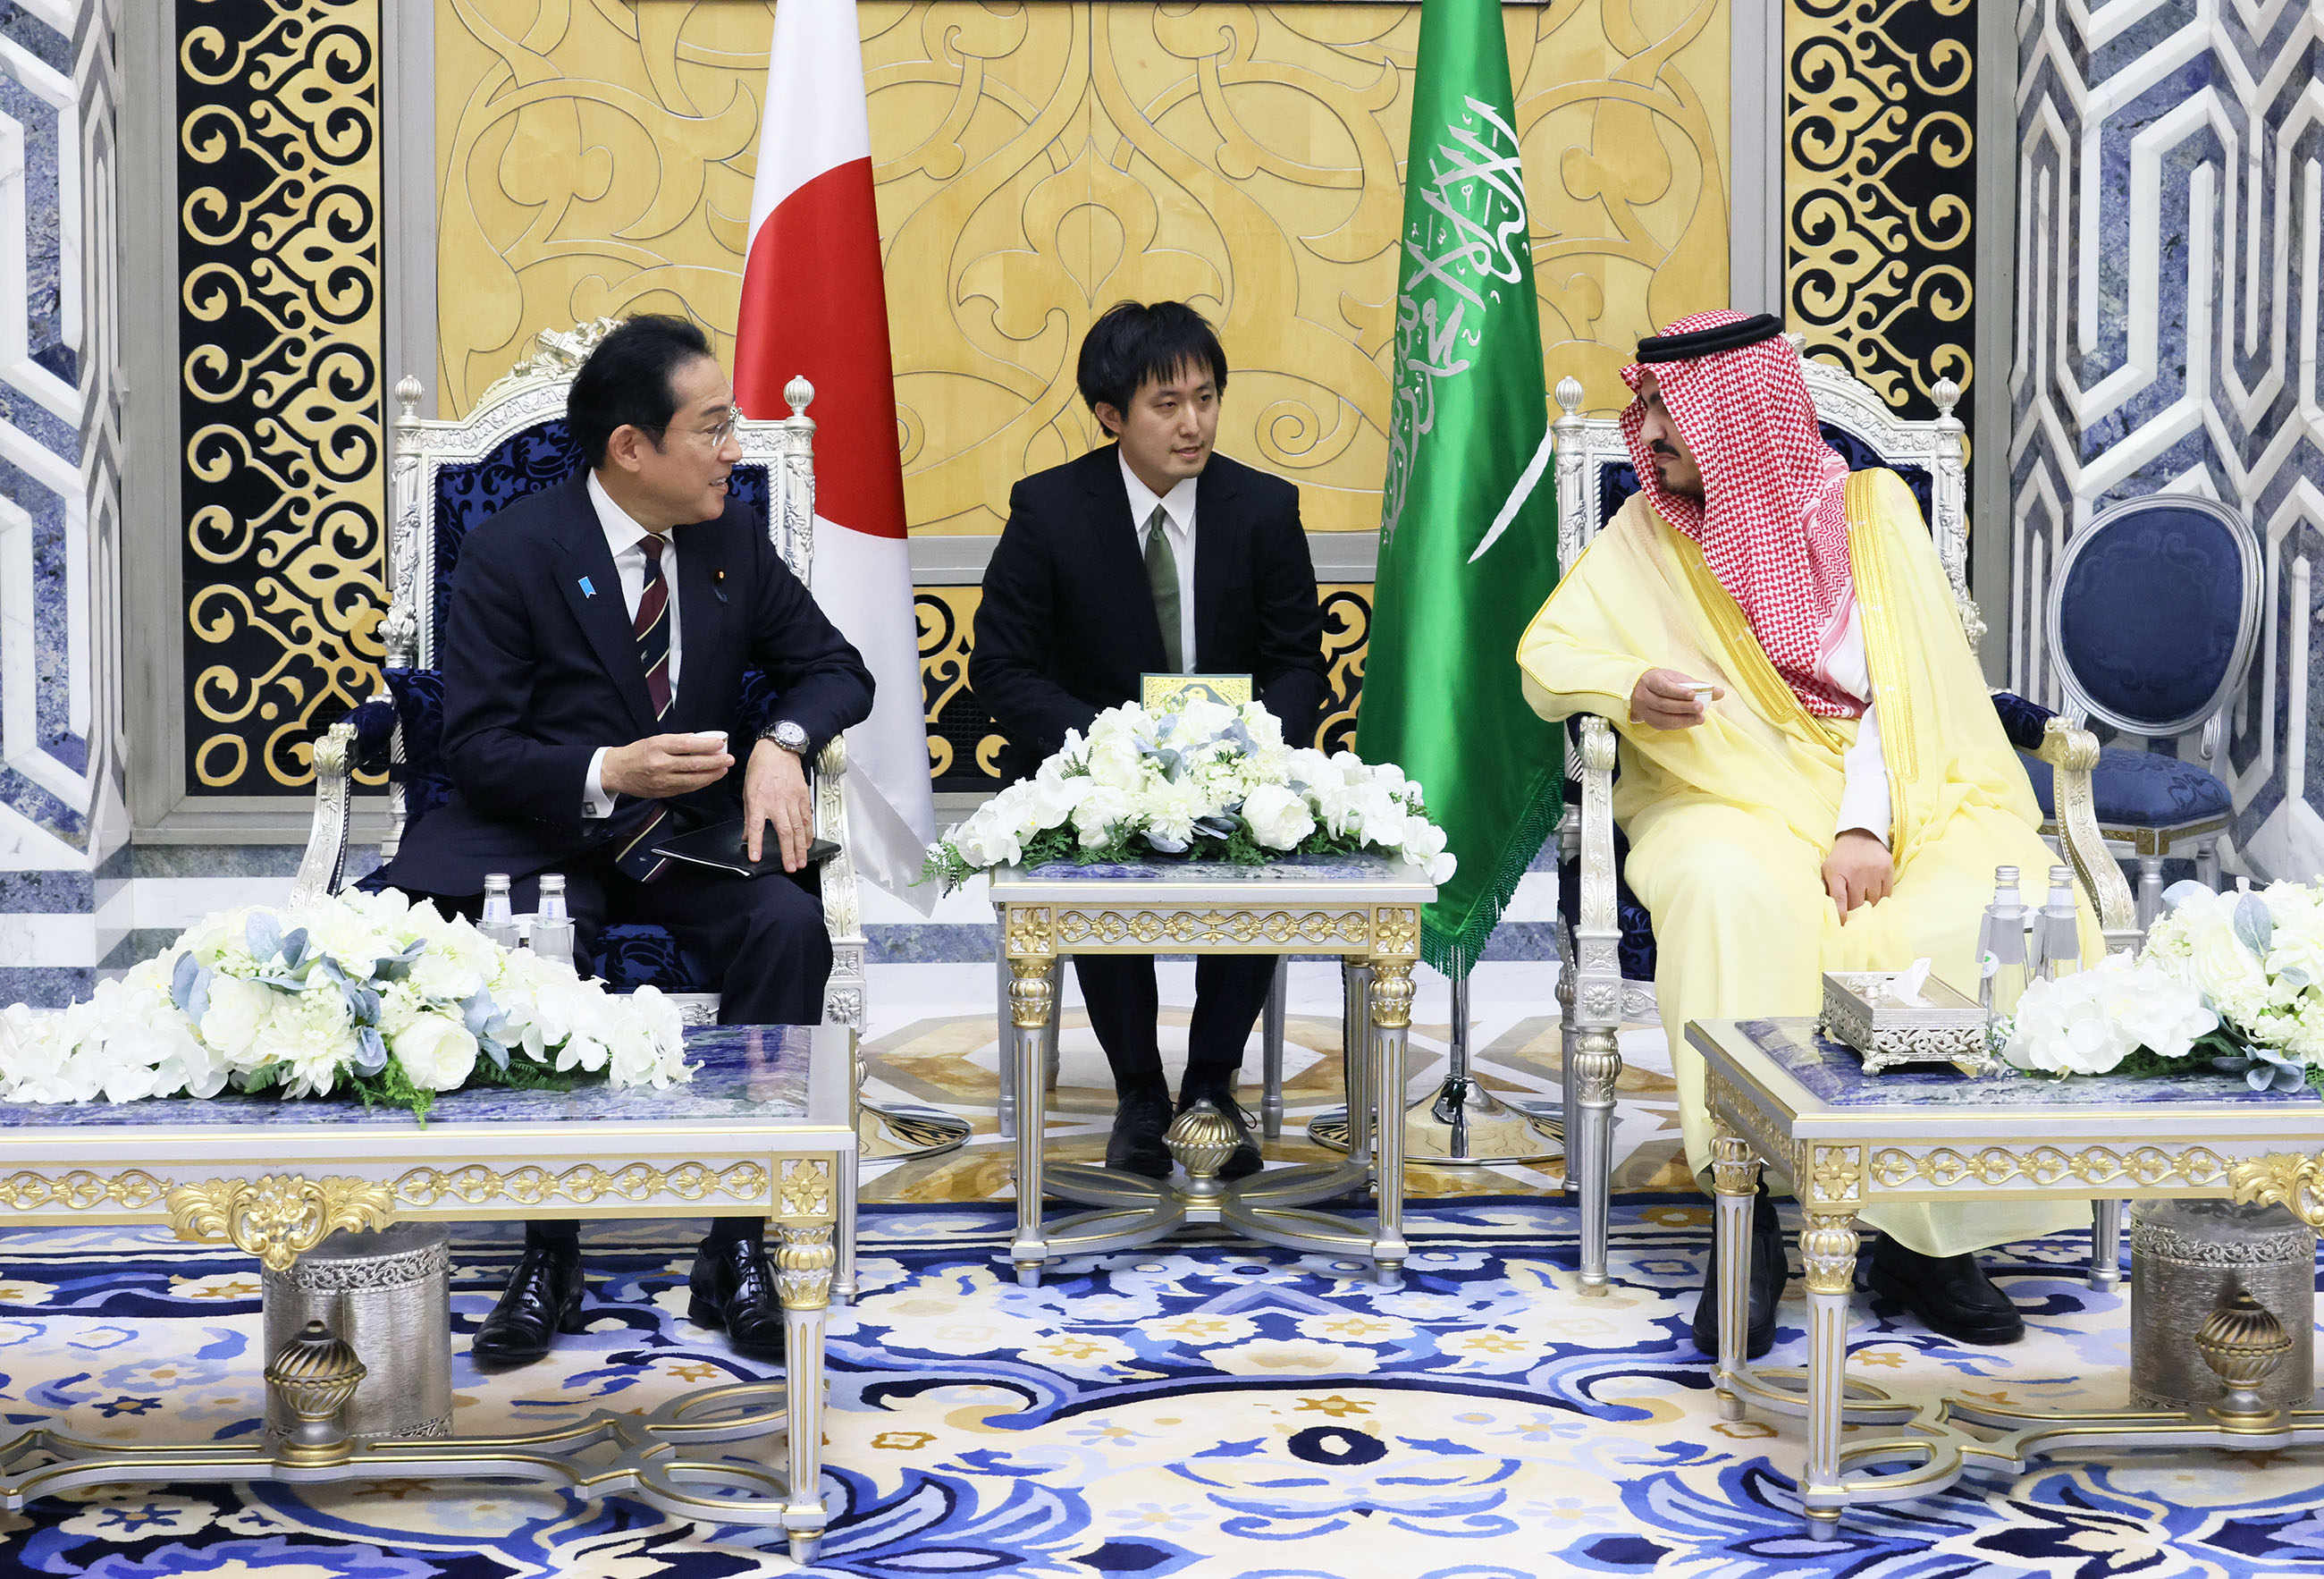 Prime Minister Kishida arriving in Saudi Arabia (3)